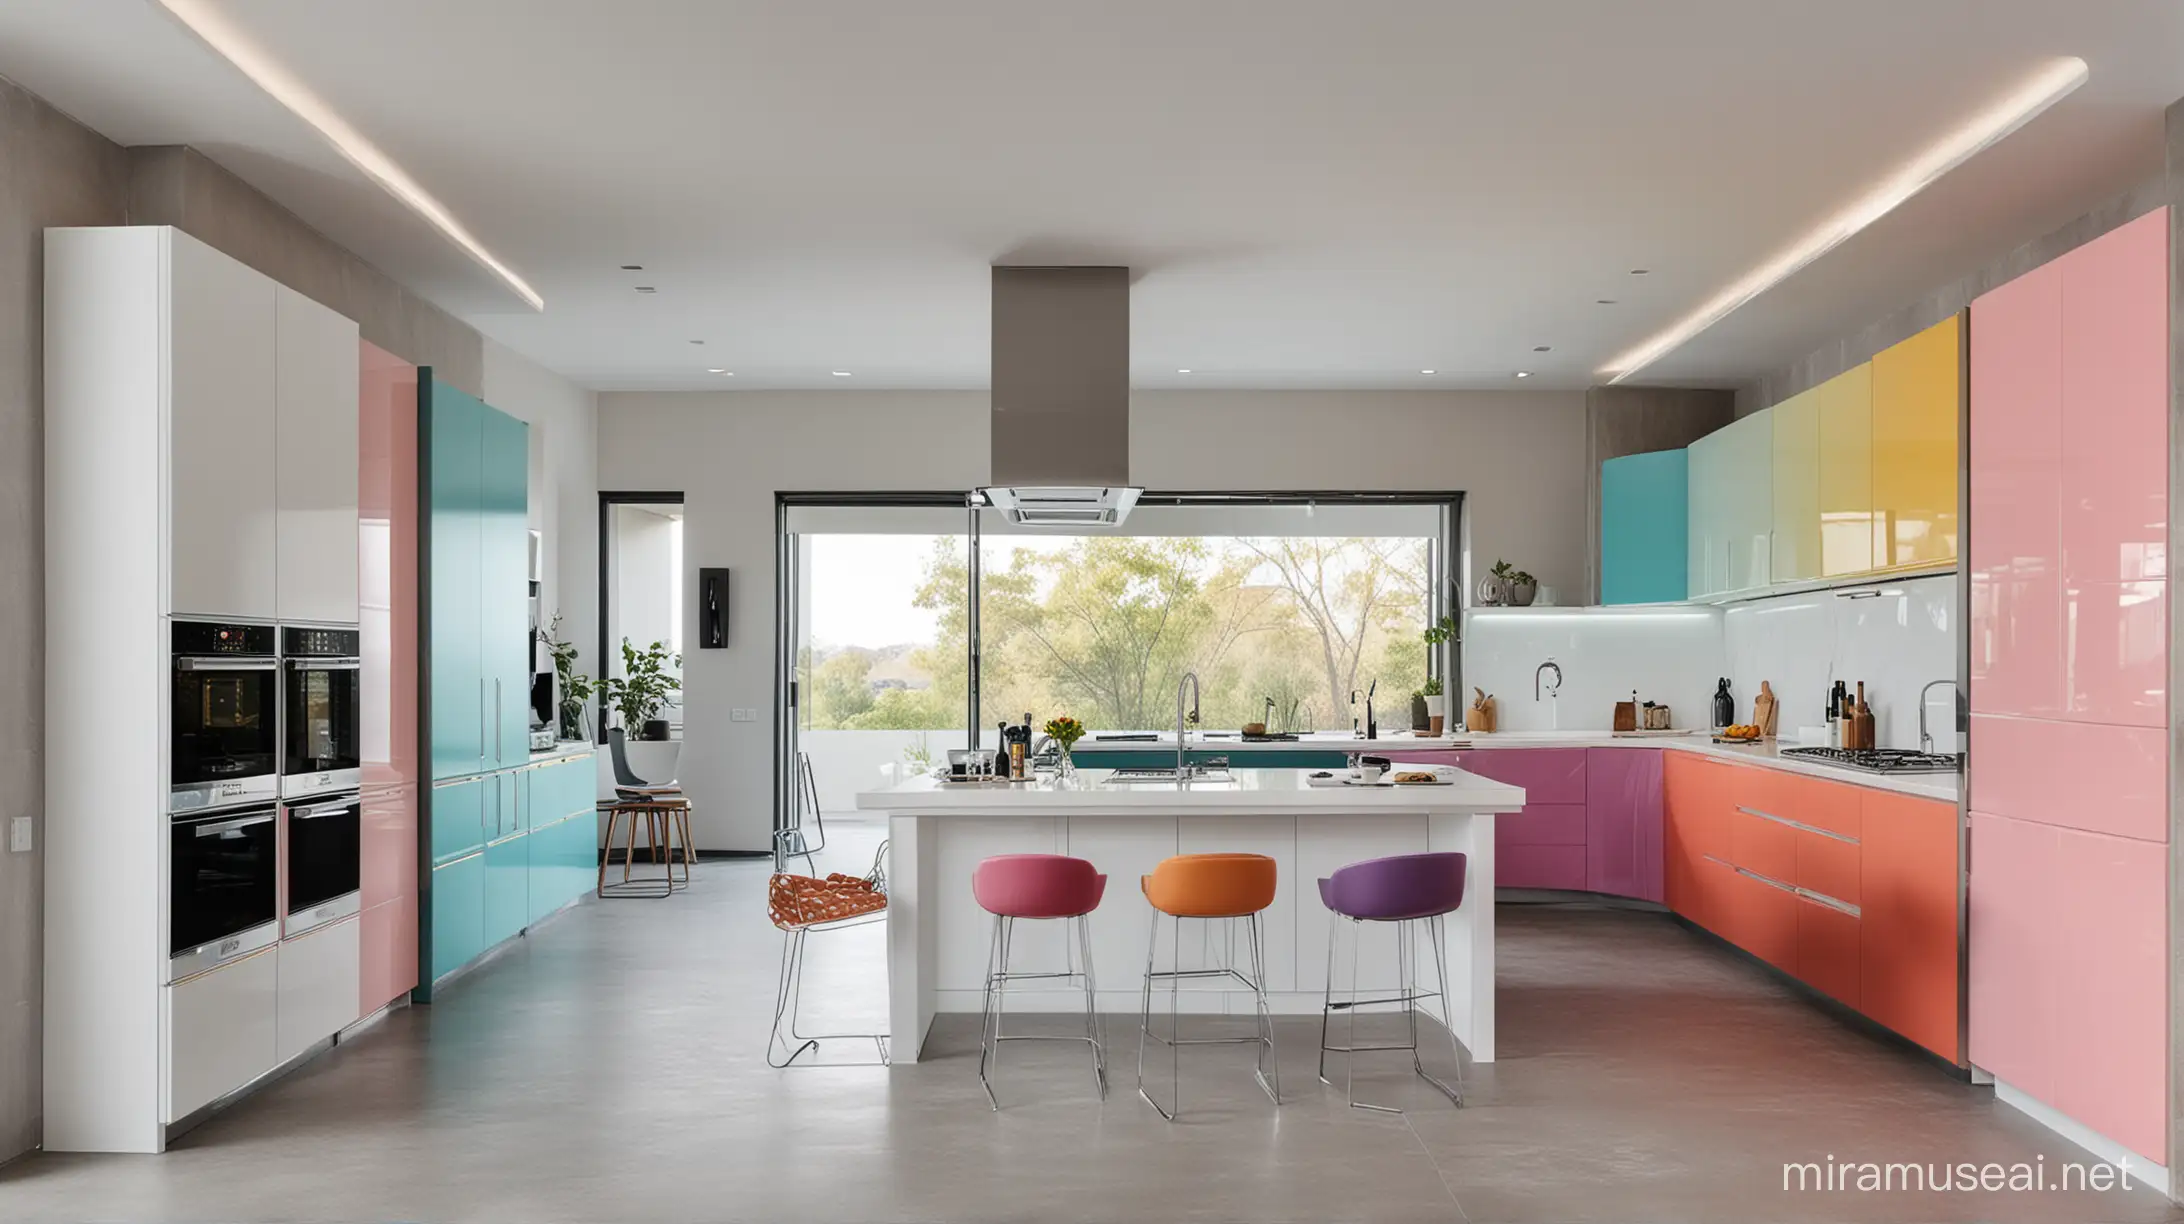 Vibrant Futuristic Kitchen with Multicolored Cabinets